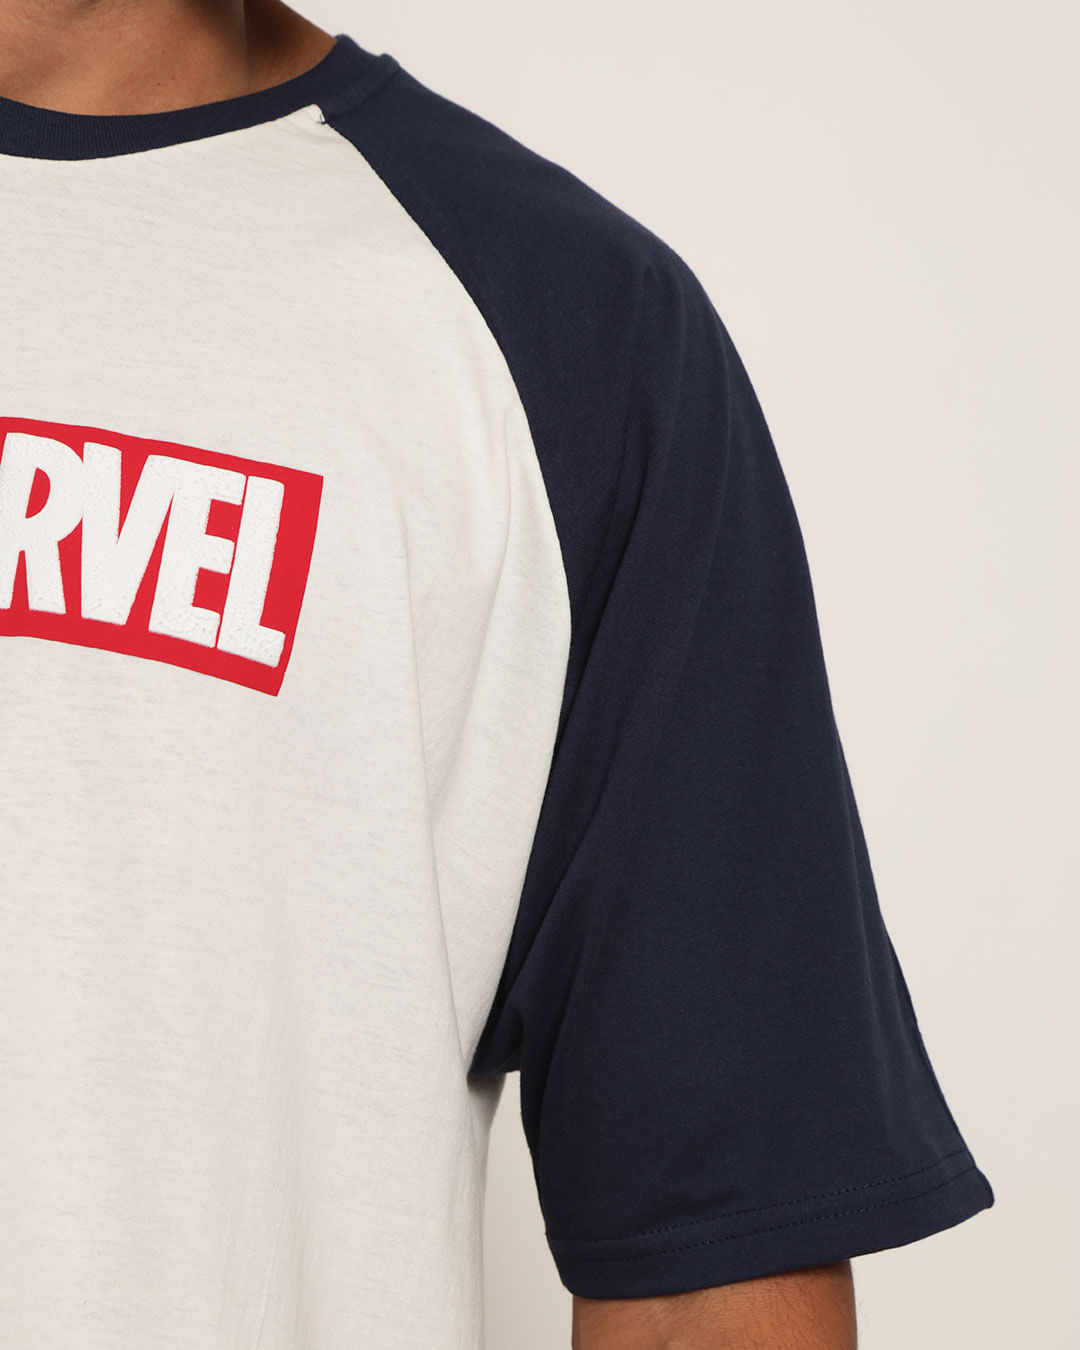 Camiseta-Marvel-T38739-Pgg---Off-White